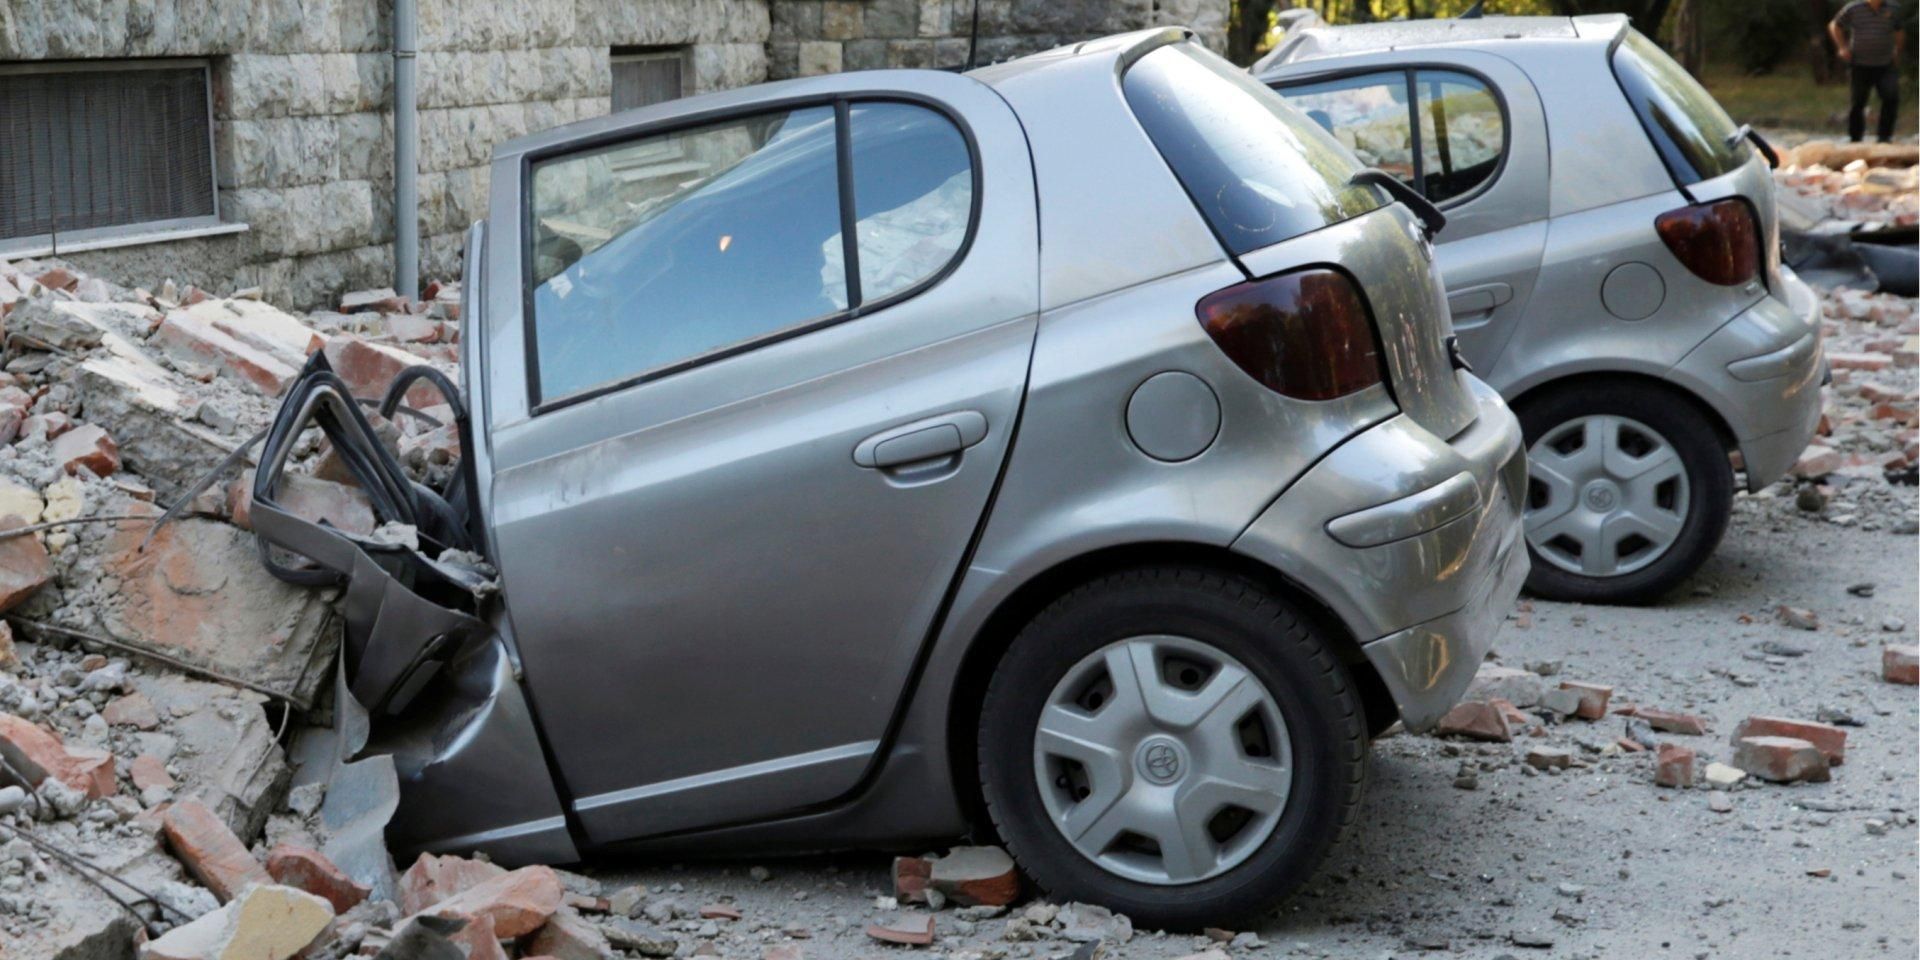 Самое мощное землетрясение за 30 лет в Албании: есть травмированные